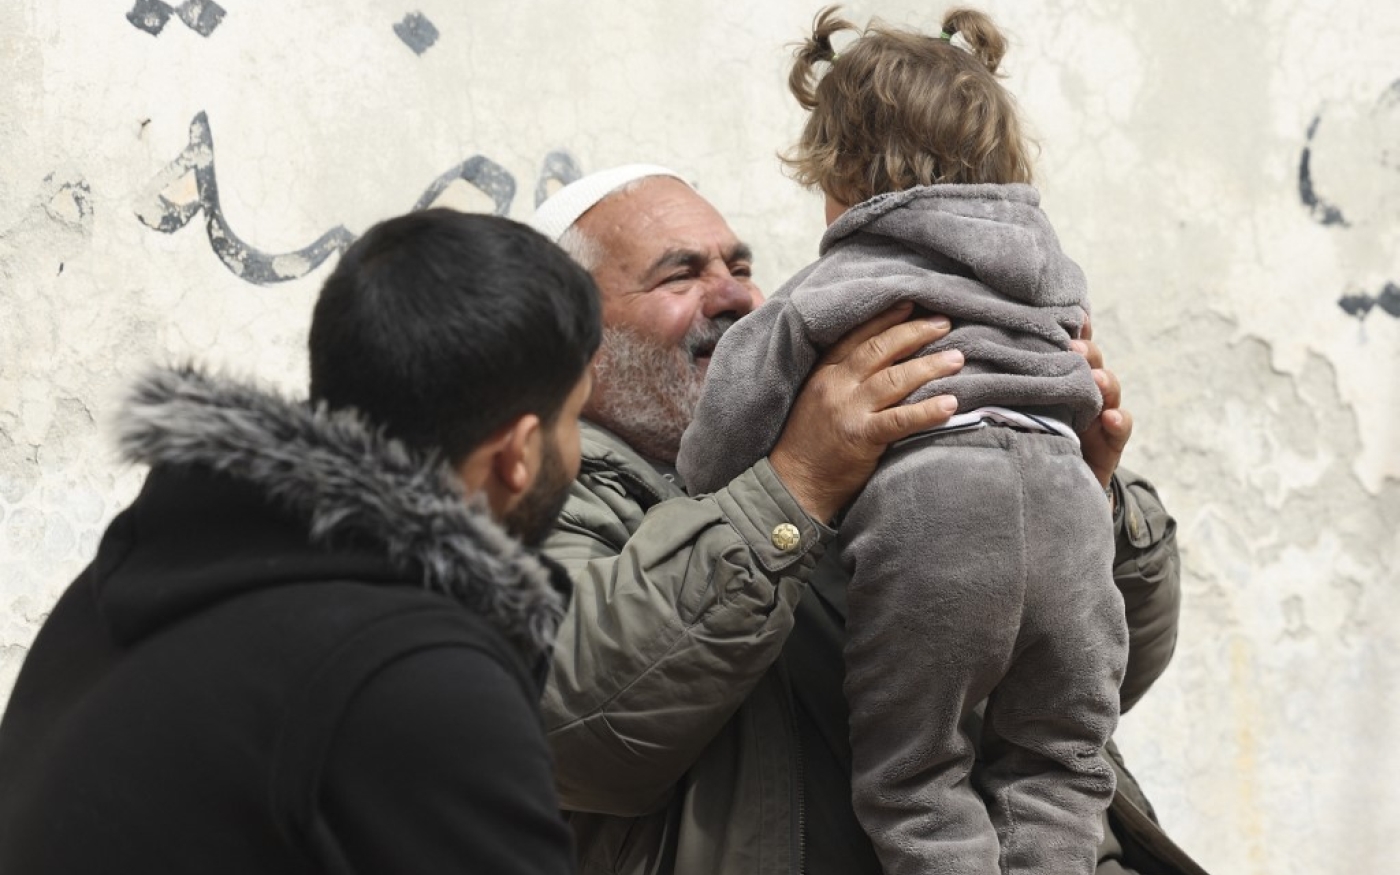 La petite orpheline Hibatullah dans les bras d’Ibrahim Osman qui l’a recueillie chez lui depuis trois ans (AFP/Omar Hajj Kaddour)